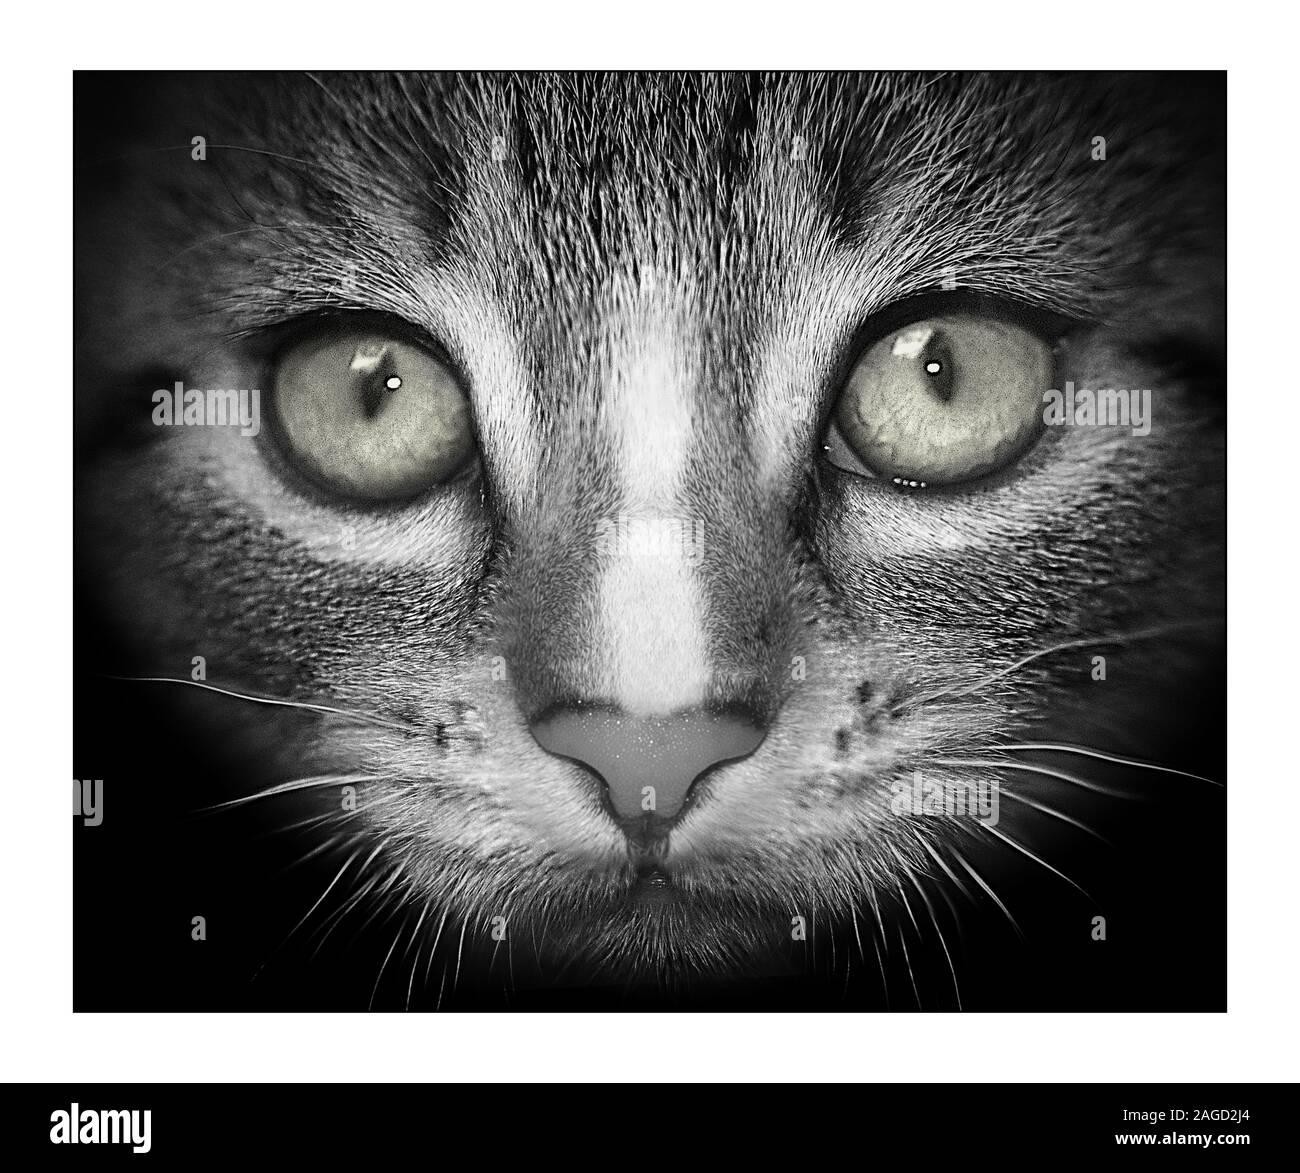 Immagine in scala di grigi del closeup di un gattino con gli occhi spalancati e. uno sfondo nero Foto Stock